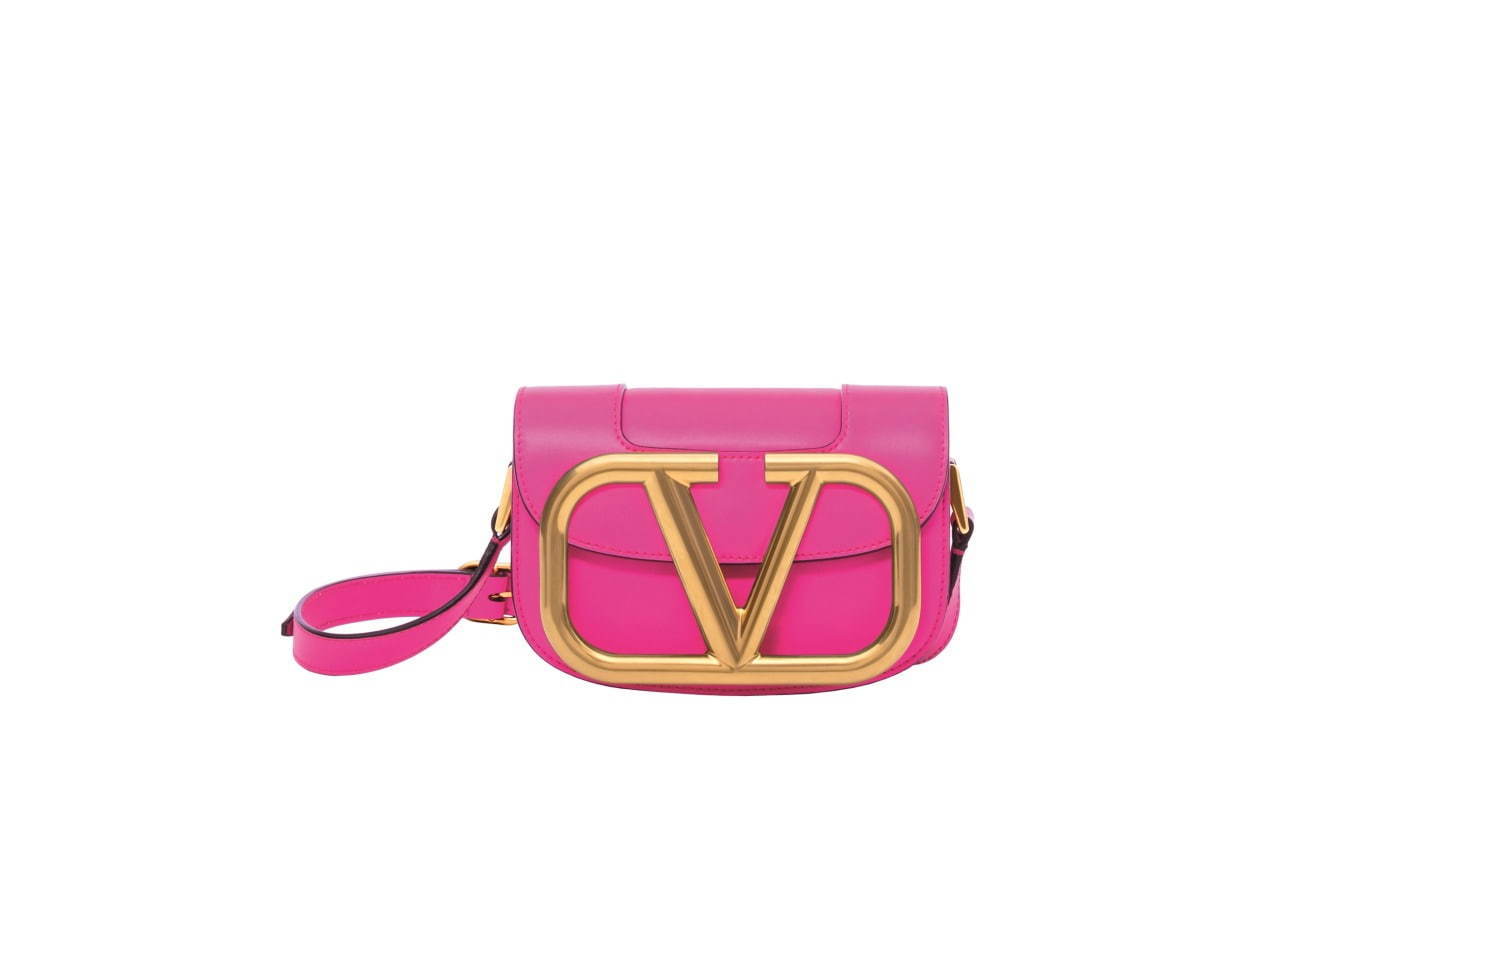 ヴァレンティノ ガラヴァーニ、ヴィヴィッドピンク×ゴールドロゴのミニバッグ